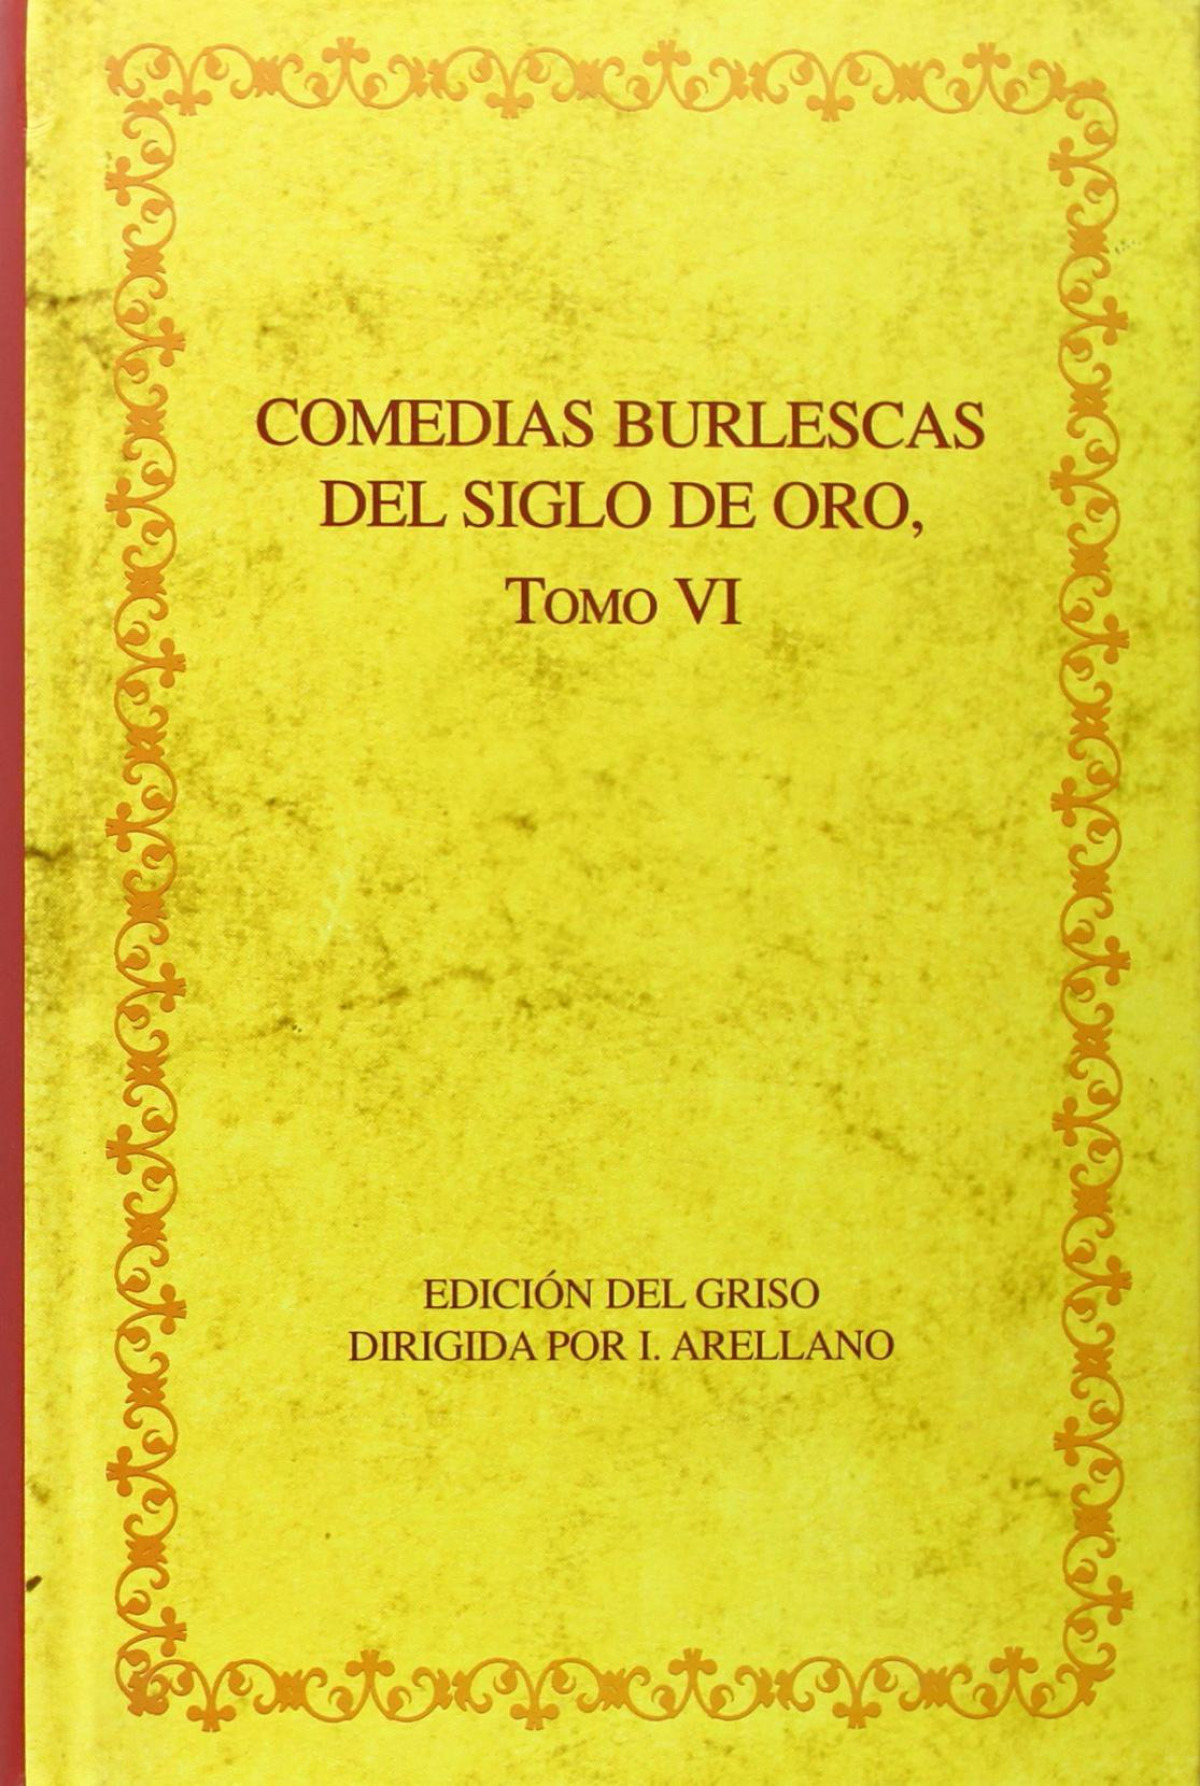 (TOMO VI).Comedias burlescas del siglo oro - Arellano, Ignacio